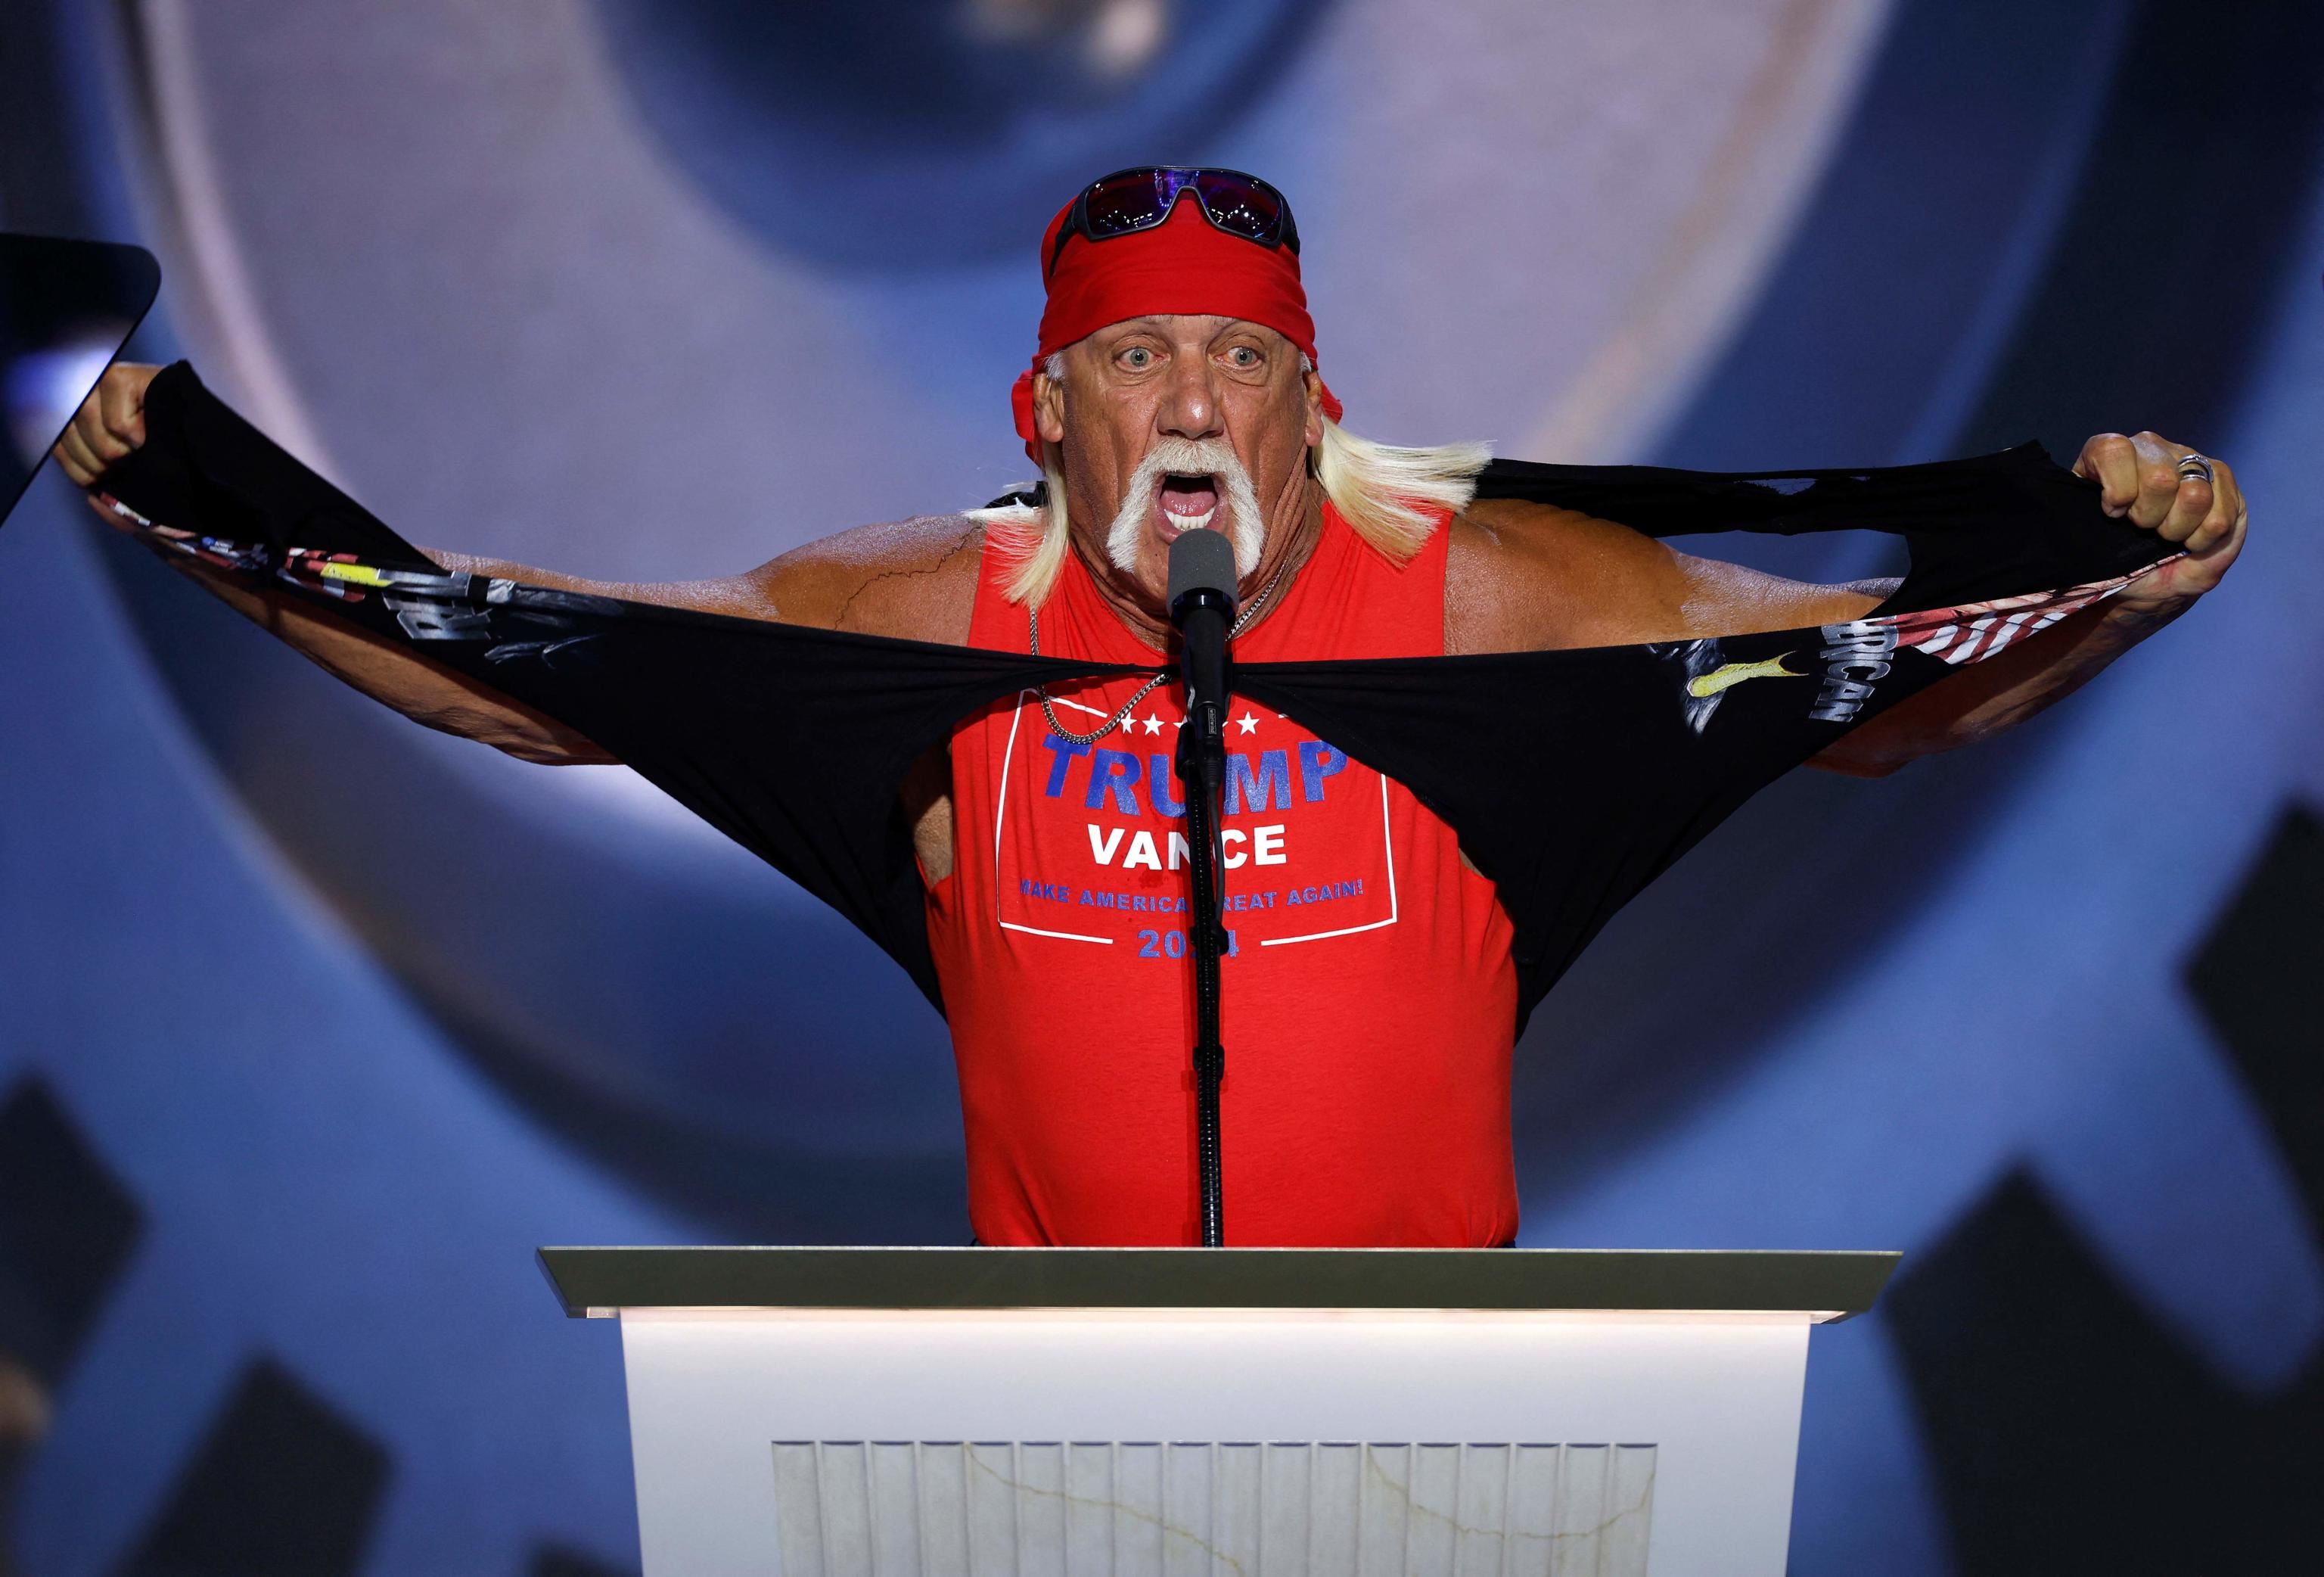 L'intervento di Hogan, star del wrestling - ANSA